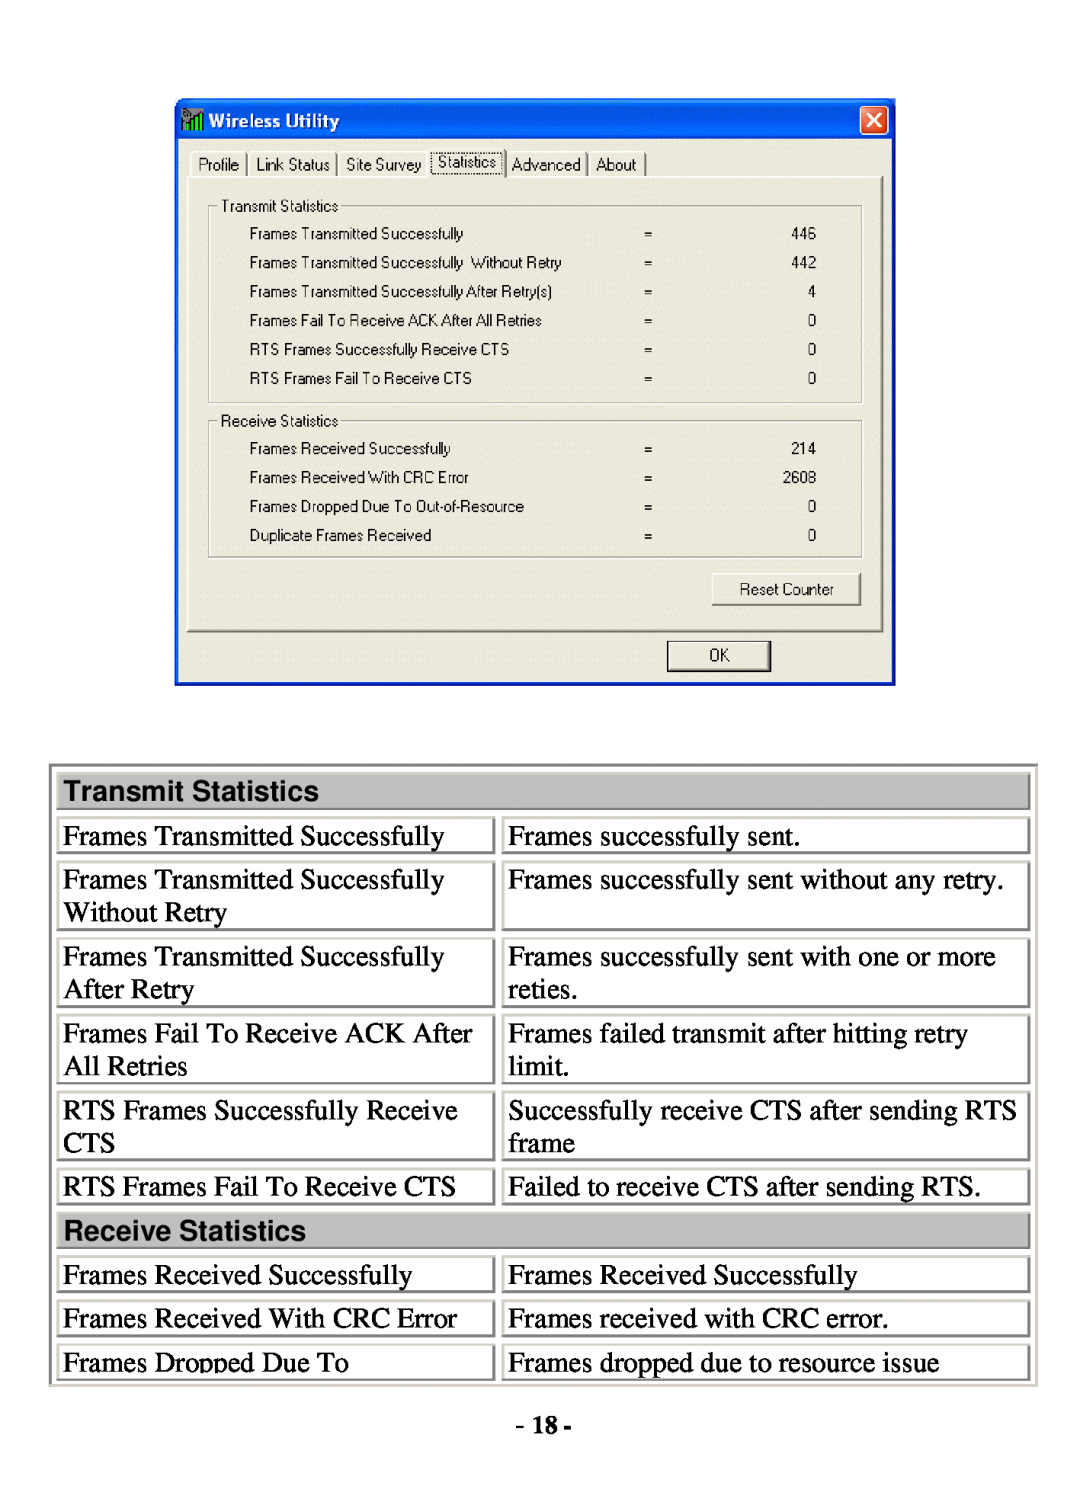 Xterasys USB Adapter user manual Transmit Statistics, Receive Statistics 